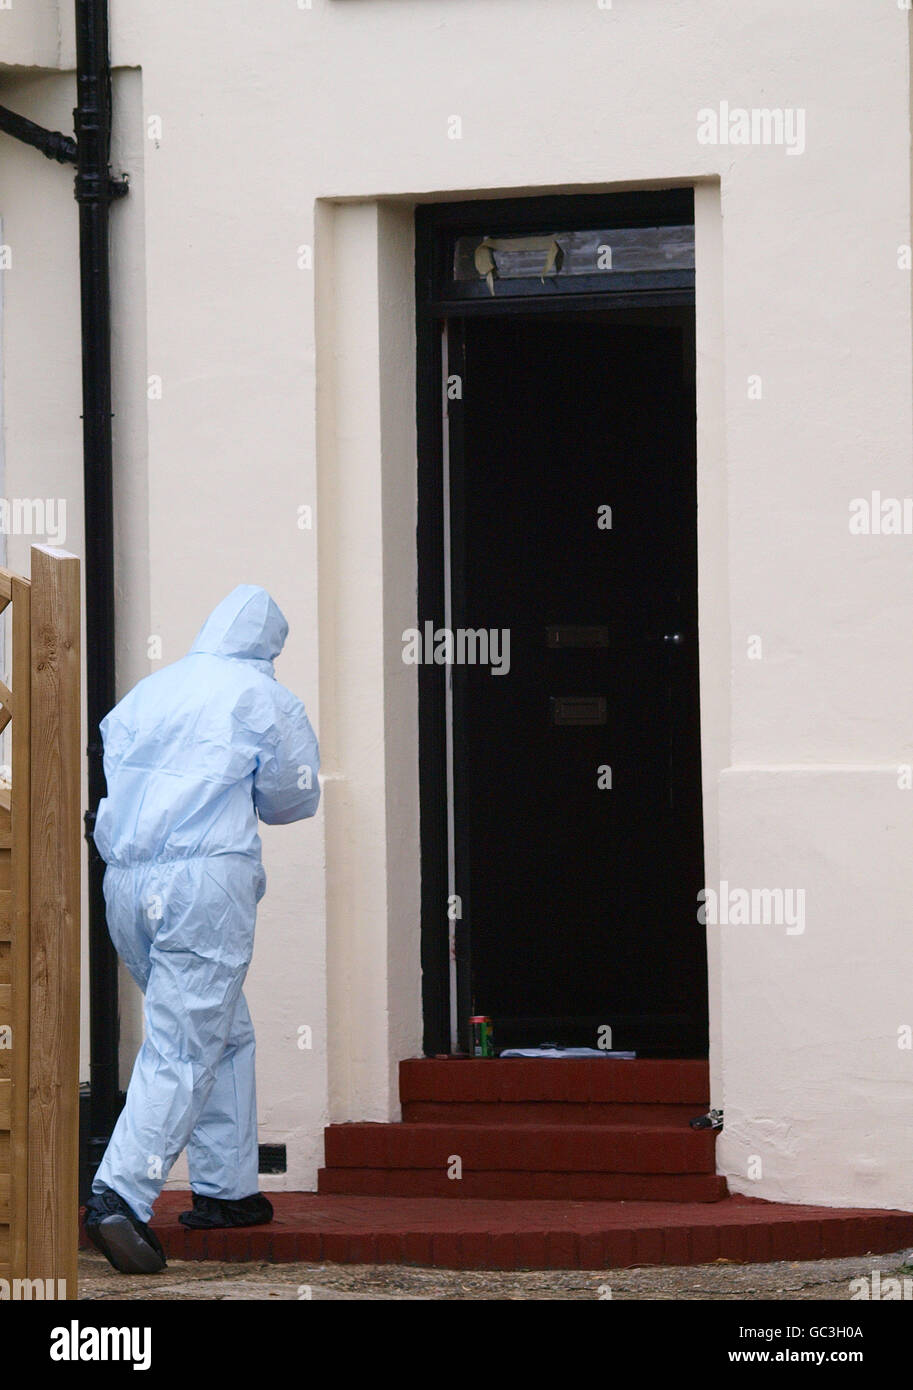 Un expert judiciaire de la police se dirige vers l'entrée d'une maison à Edgware, dans le nord de Londres, lors d'un raid de police sur un petit bloc d'appartements. Des rapports non corroborés ont affirmé que le raid était sur une usine de méths de cristal. Banque D'Images